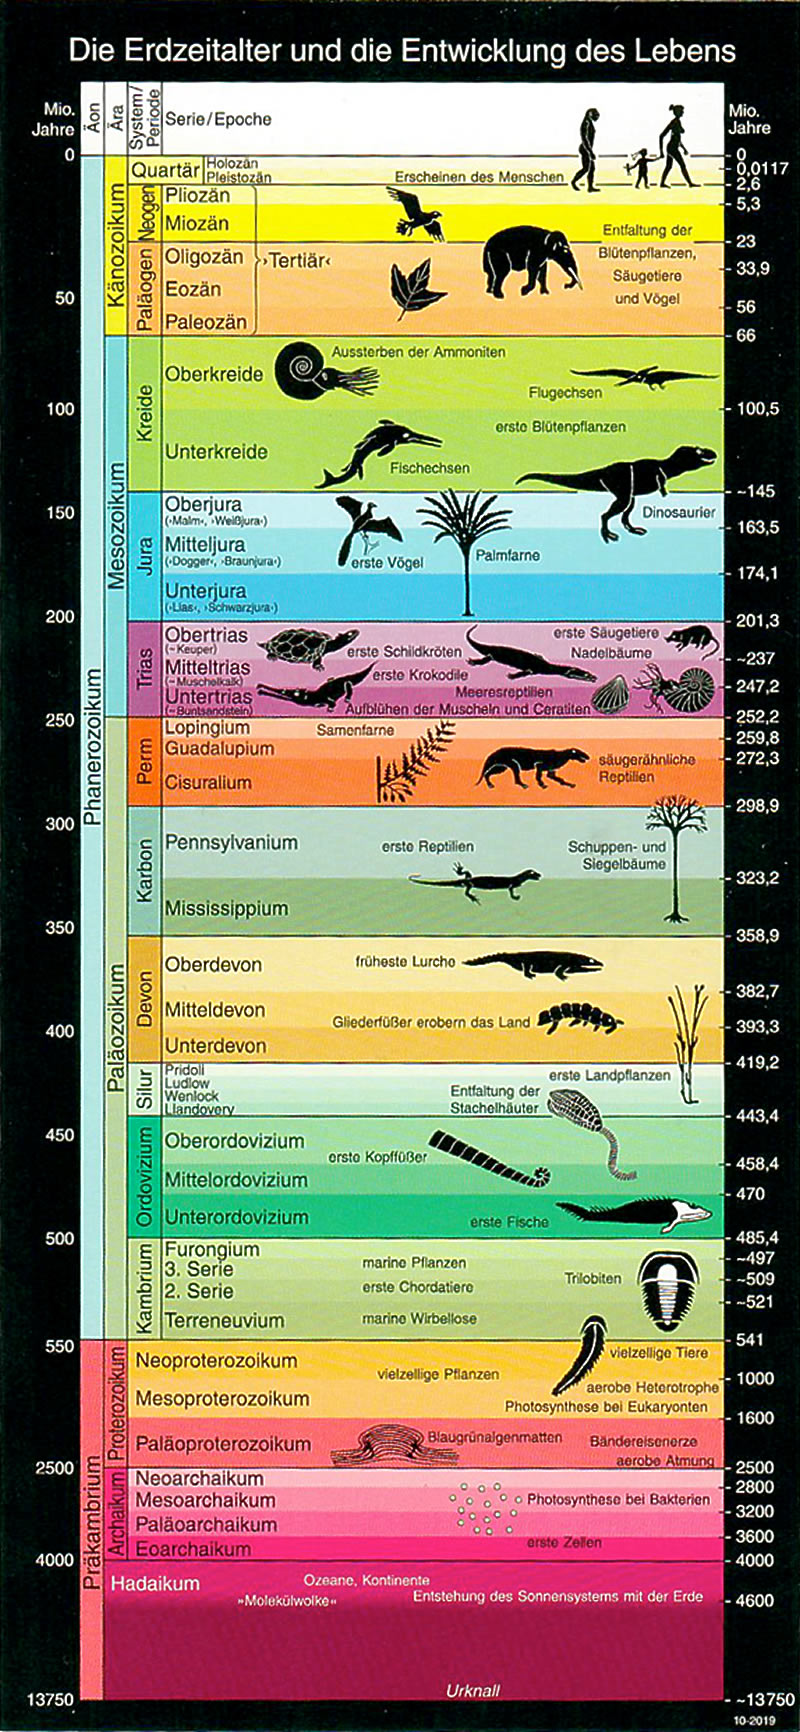 Schema der Erdzeitalter mit Angaben zu wichtigen Phasen in der Entwicklung des Lebens auf der Erde